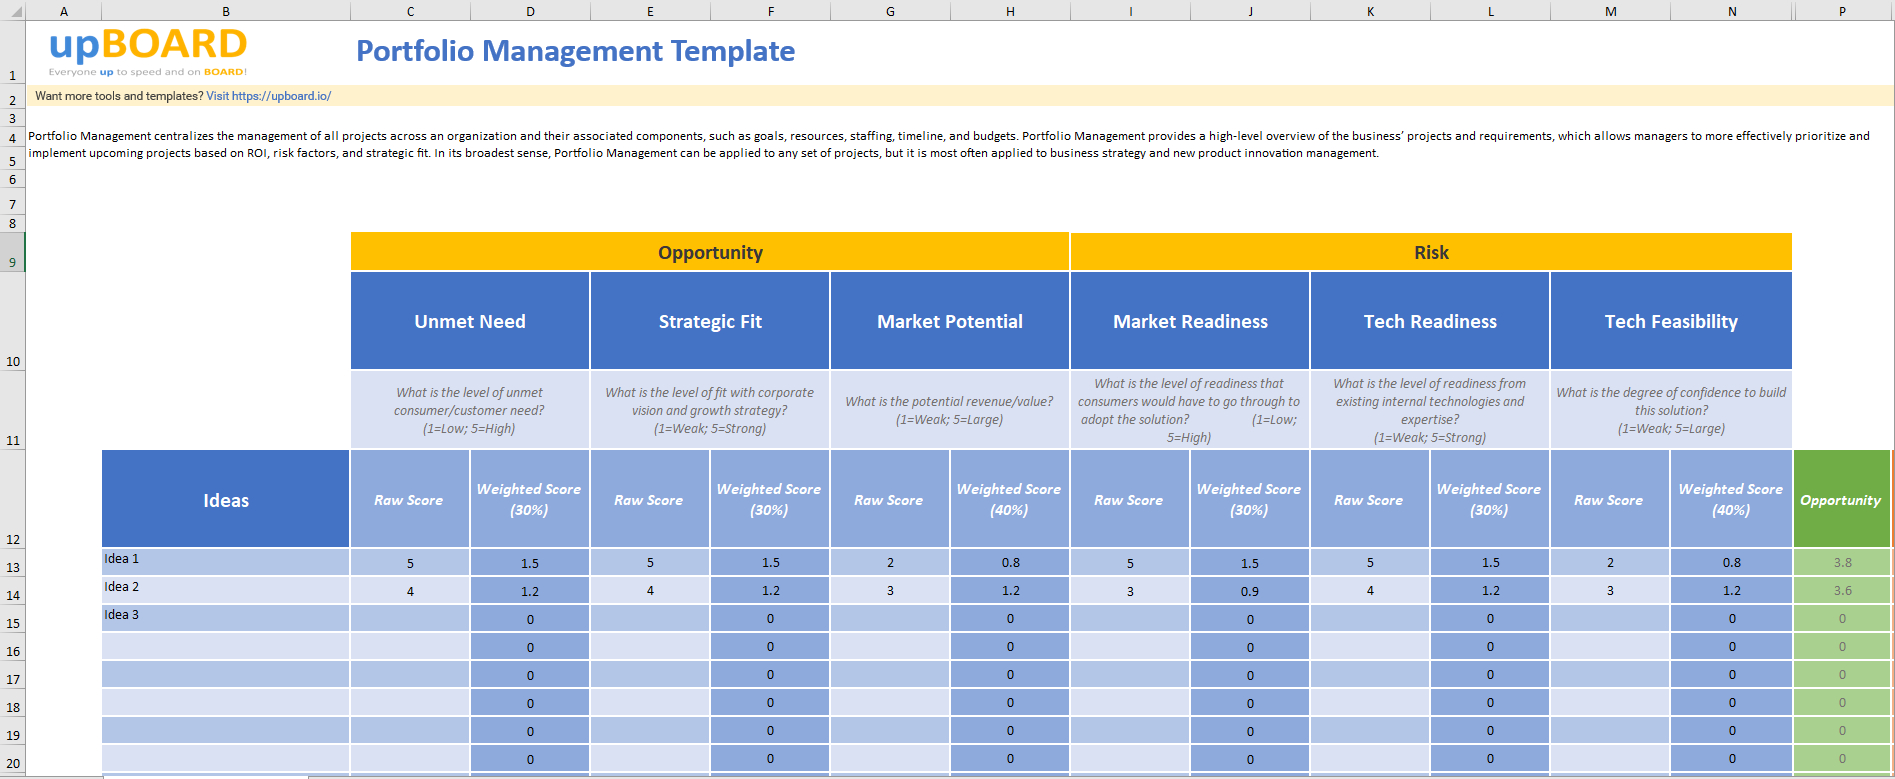 Portfolio Management Online Tools, Templates & Software With Portfolio Management Reporting Templates